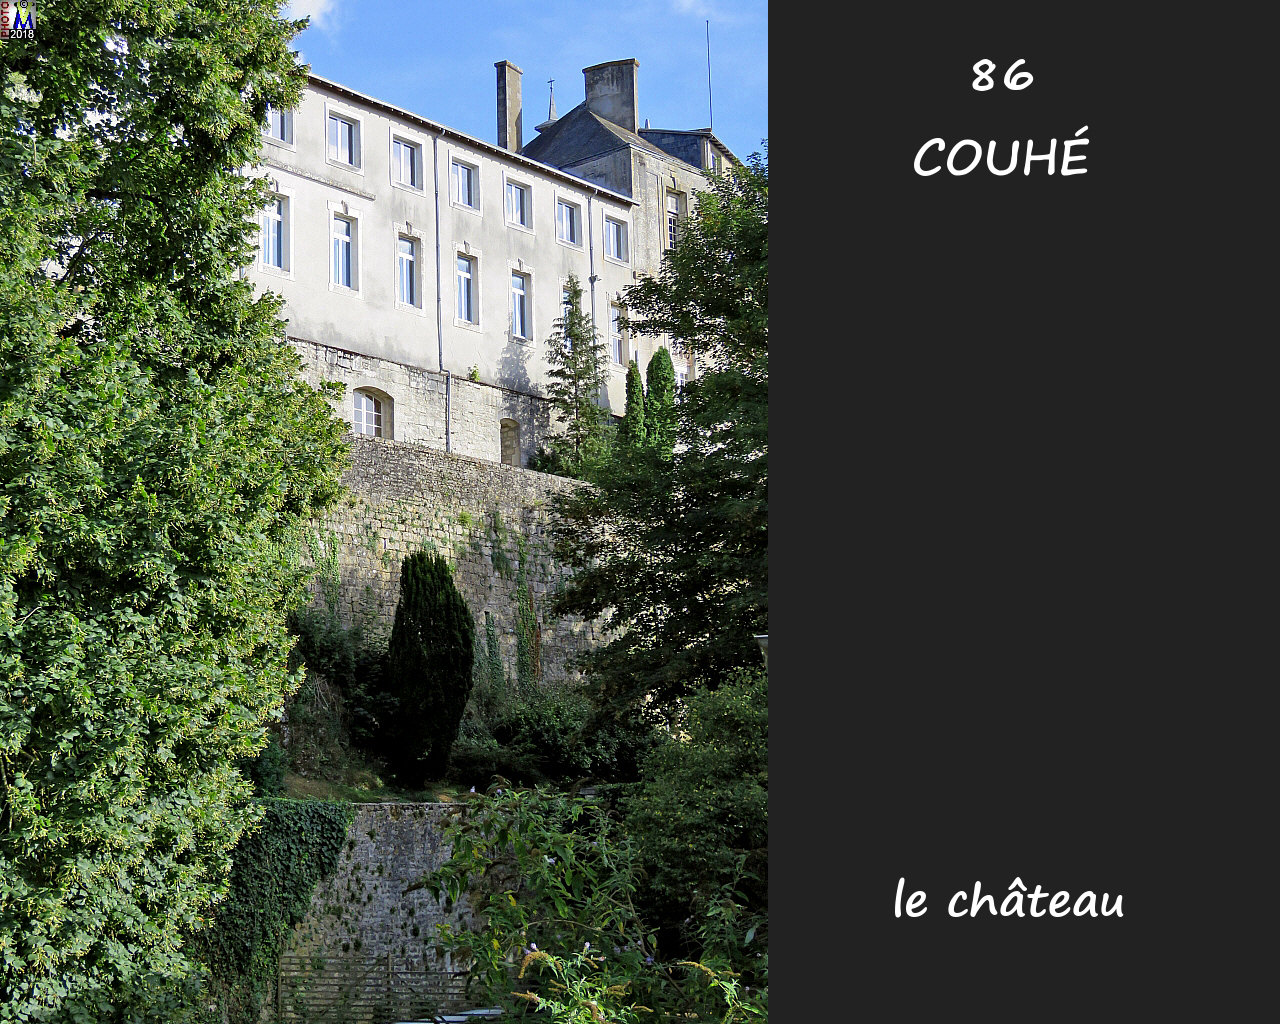 86COUHE_chateau_1008.jpg